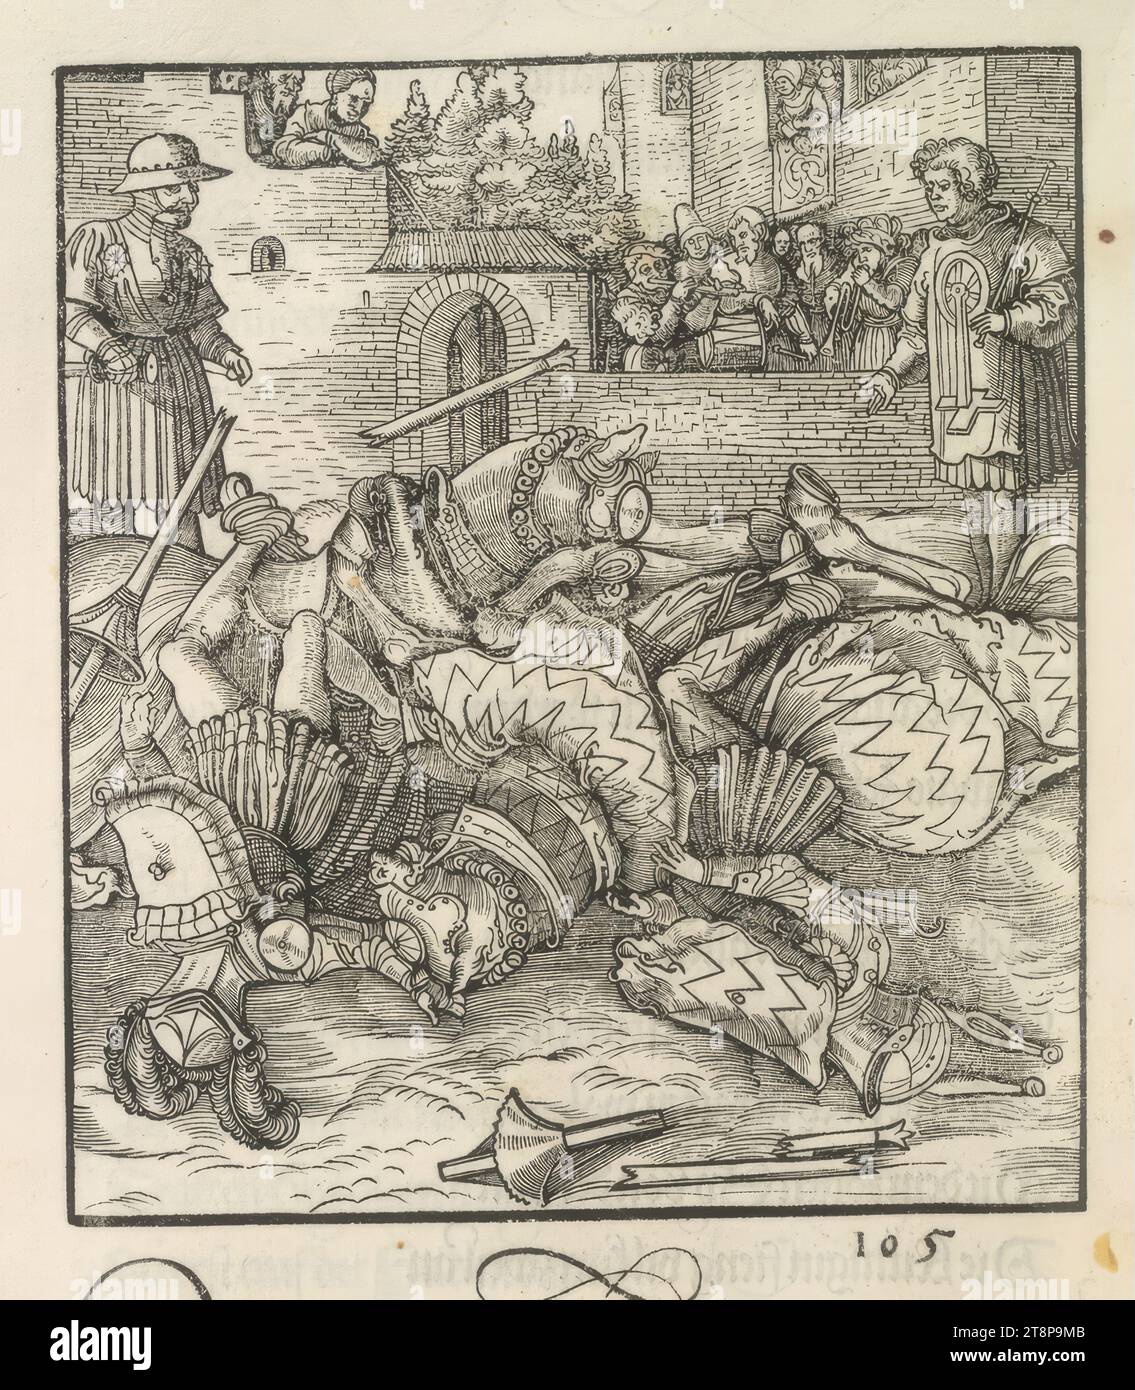 Theuerdank : image 105 - la chute de Theuerdank et son adversaire, qui sont couchés sur le sol comme dans un faible, le 'Theuerdank' de l'empereur Maximilien Ier, Hans Schäufelin (Rhin supérieur vers 1482/83 - 1539/40 Nördlingen), 1517, impression, gravure sur bois, feuille : 34,7 x 24.3cm Banque D'Images